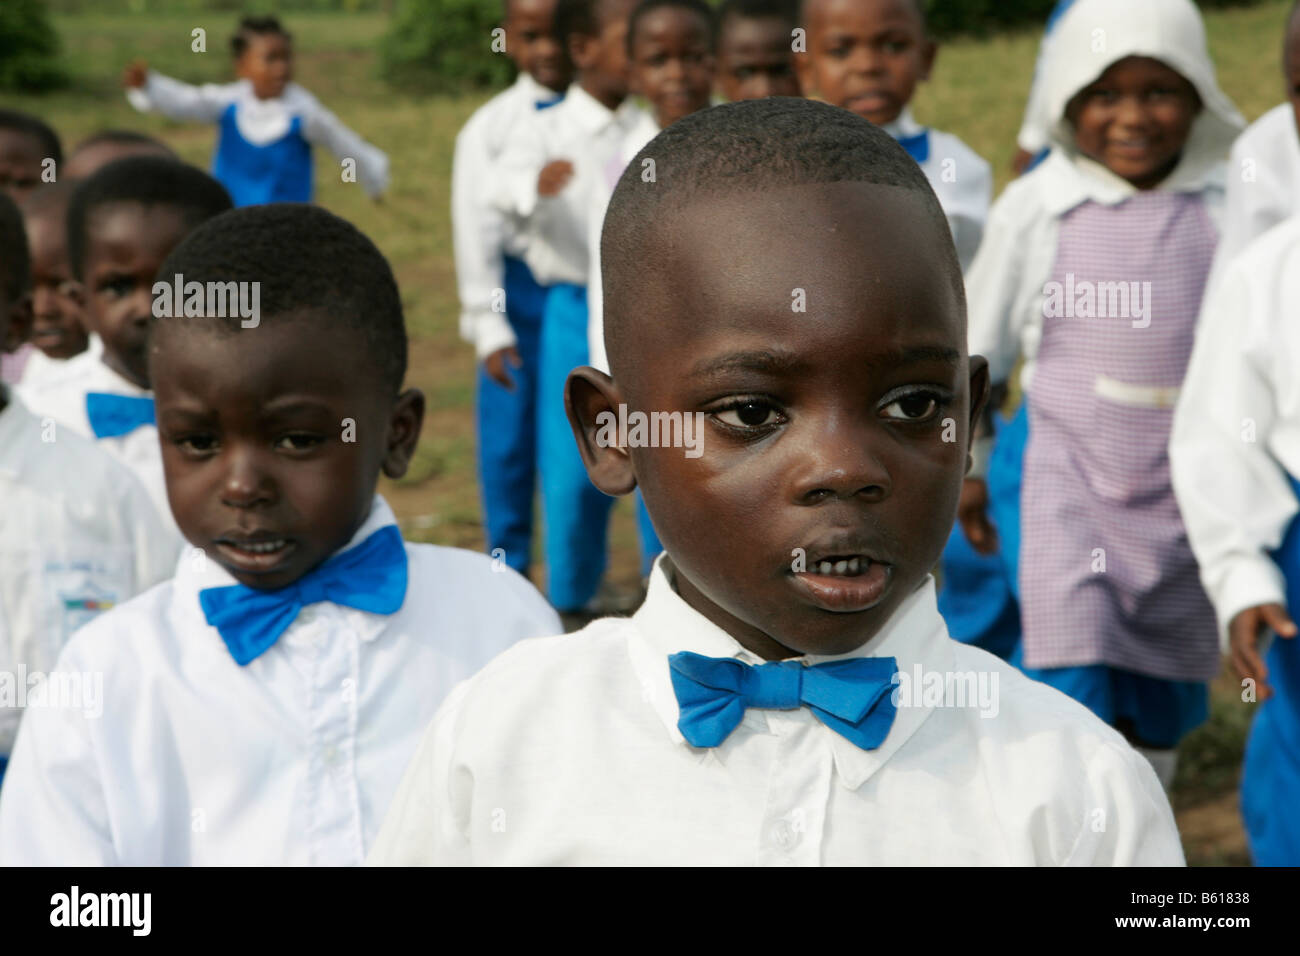 Garçon portant un uniforme, les enfants d'âge préscolaire au cours des exercices matinaux, Buea, Cameroun, Afrique Banque D'Images